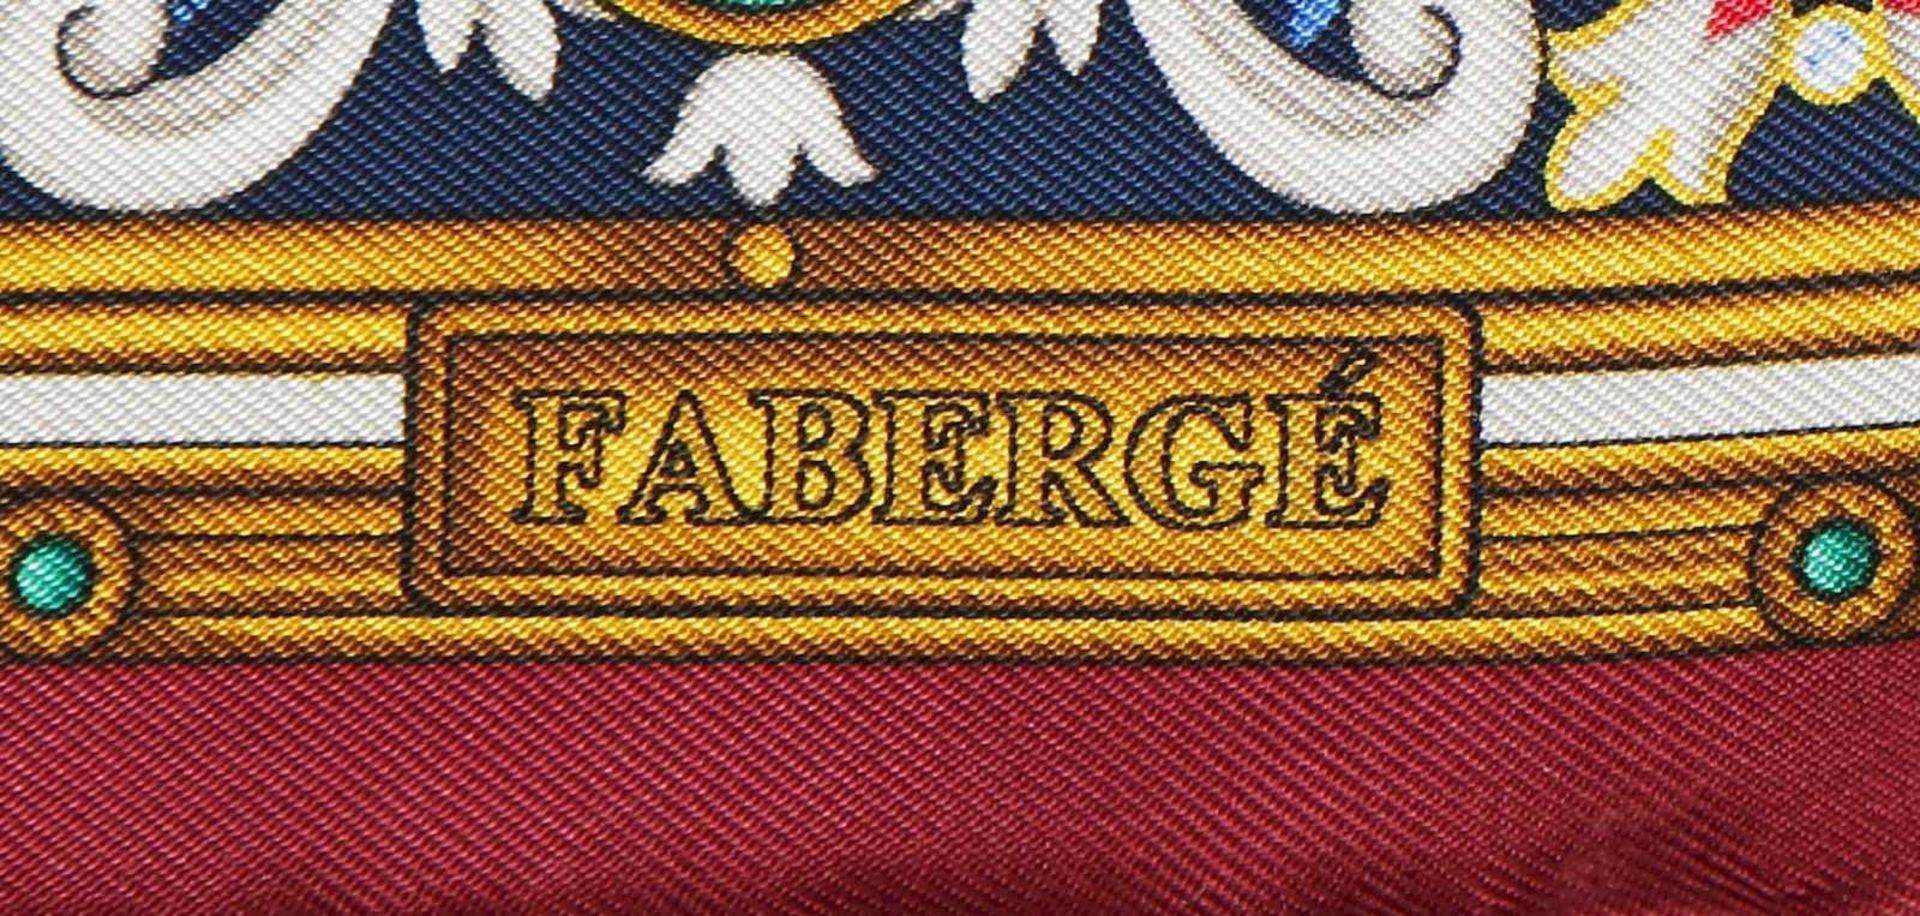 FABERGÉ SeidentuchSeide, blau-rotes, geometrisches Dekor (Fabergé-typische Emailleoptik), ca. - Bild 2 aus 2